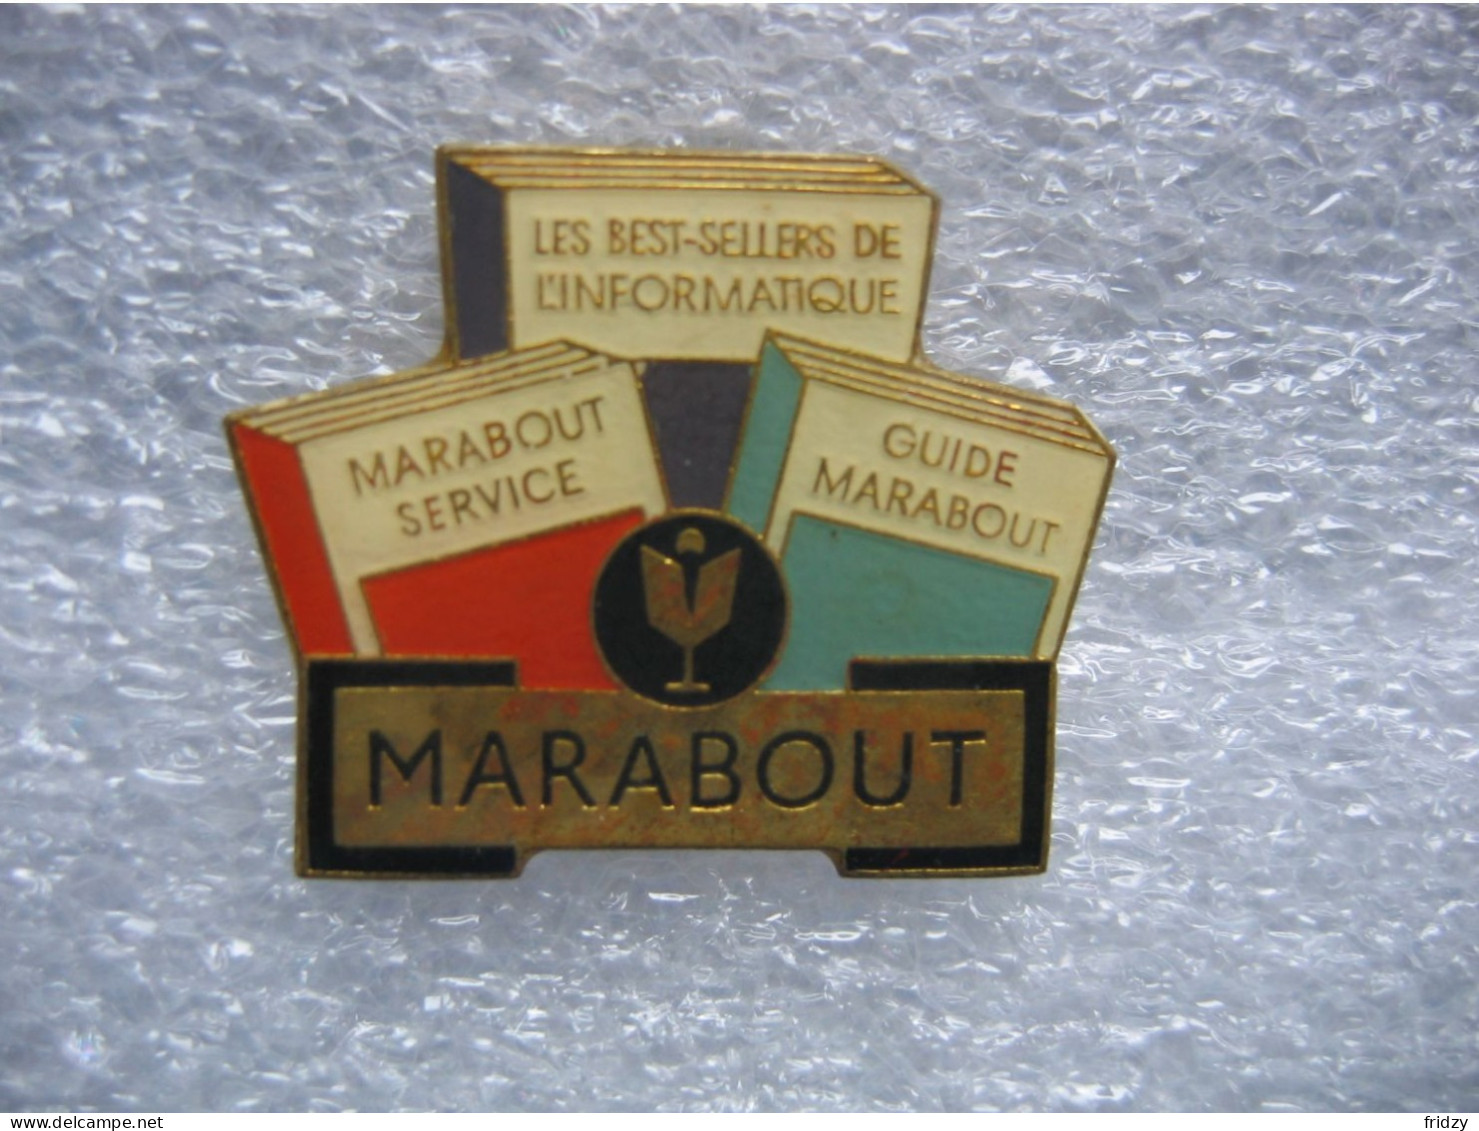 Pin's Du Logiciel Informatique "Marabout". Les Best Sellers De L'informatique. Marabout Service - Guide Marabout - Informatik